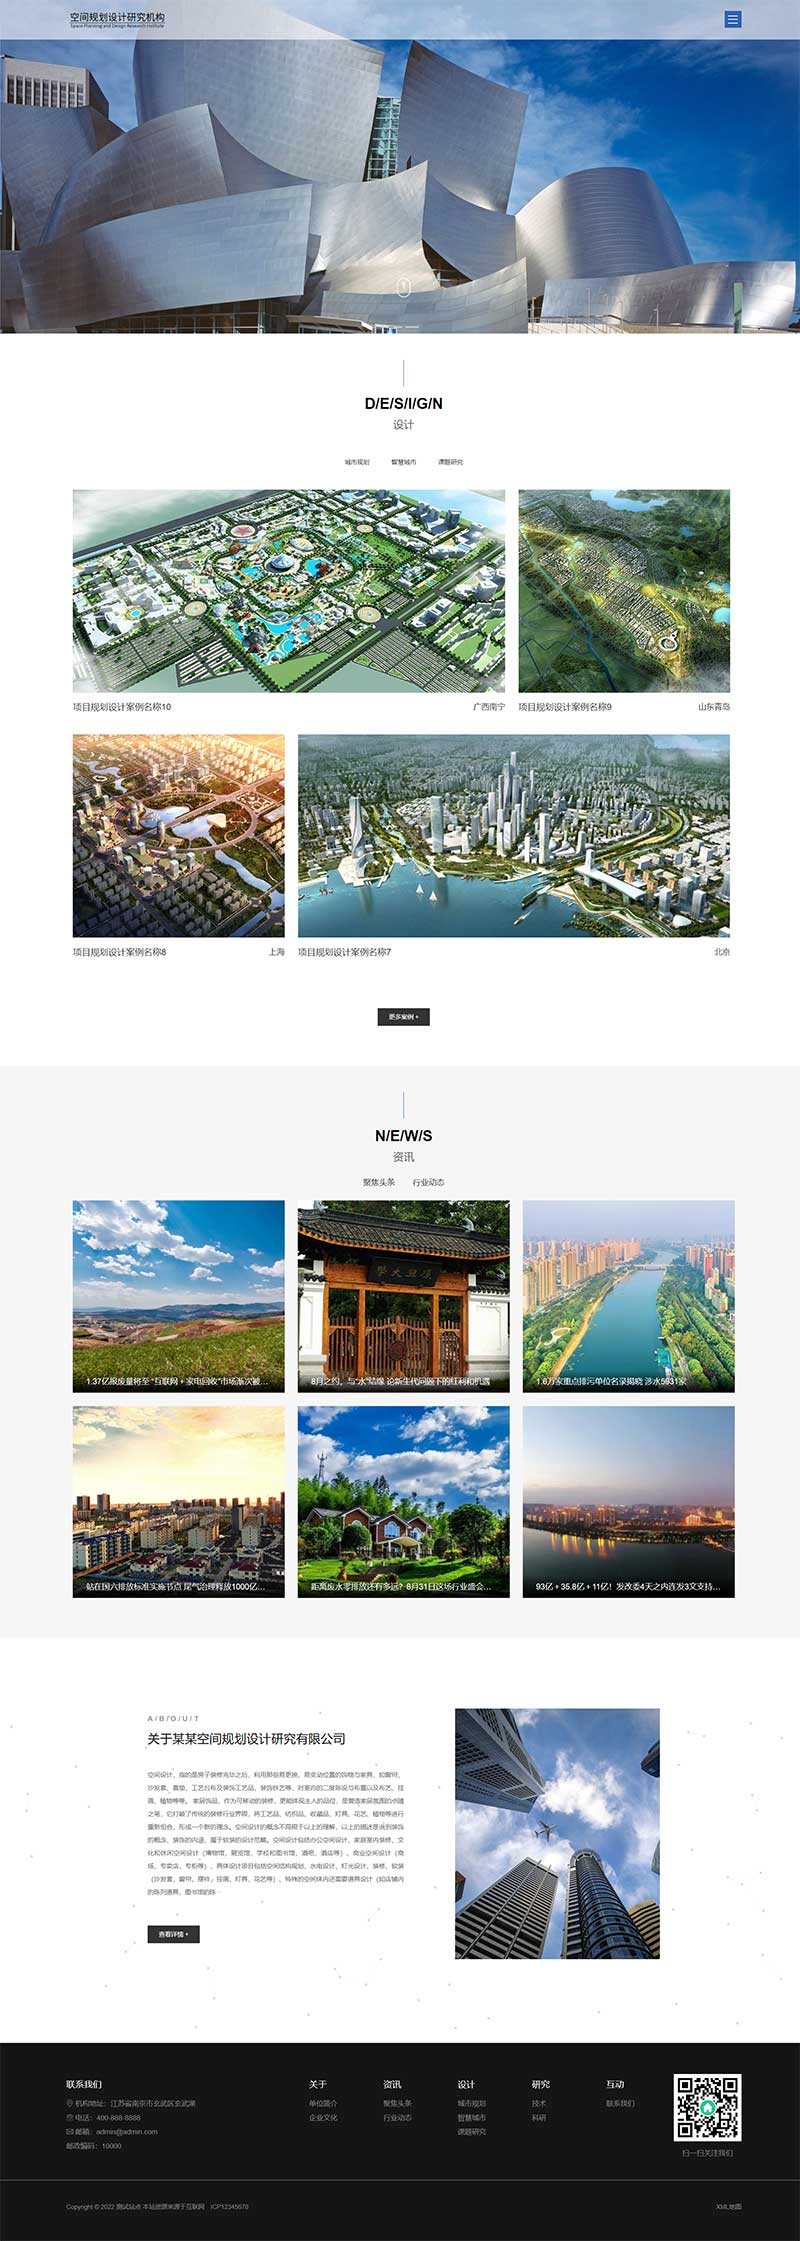 空间规划设计项目规划设计类网站Wordpress模板效果图